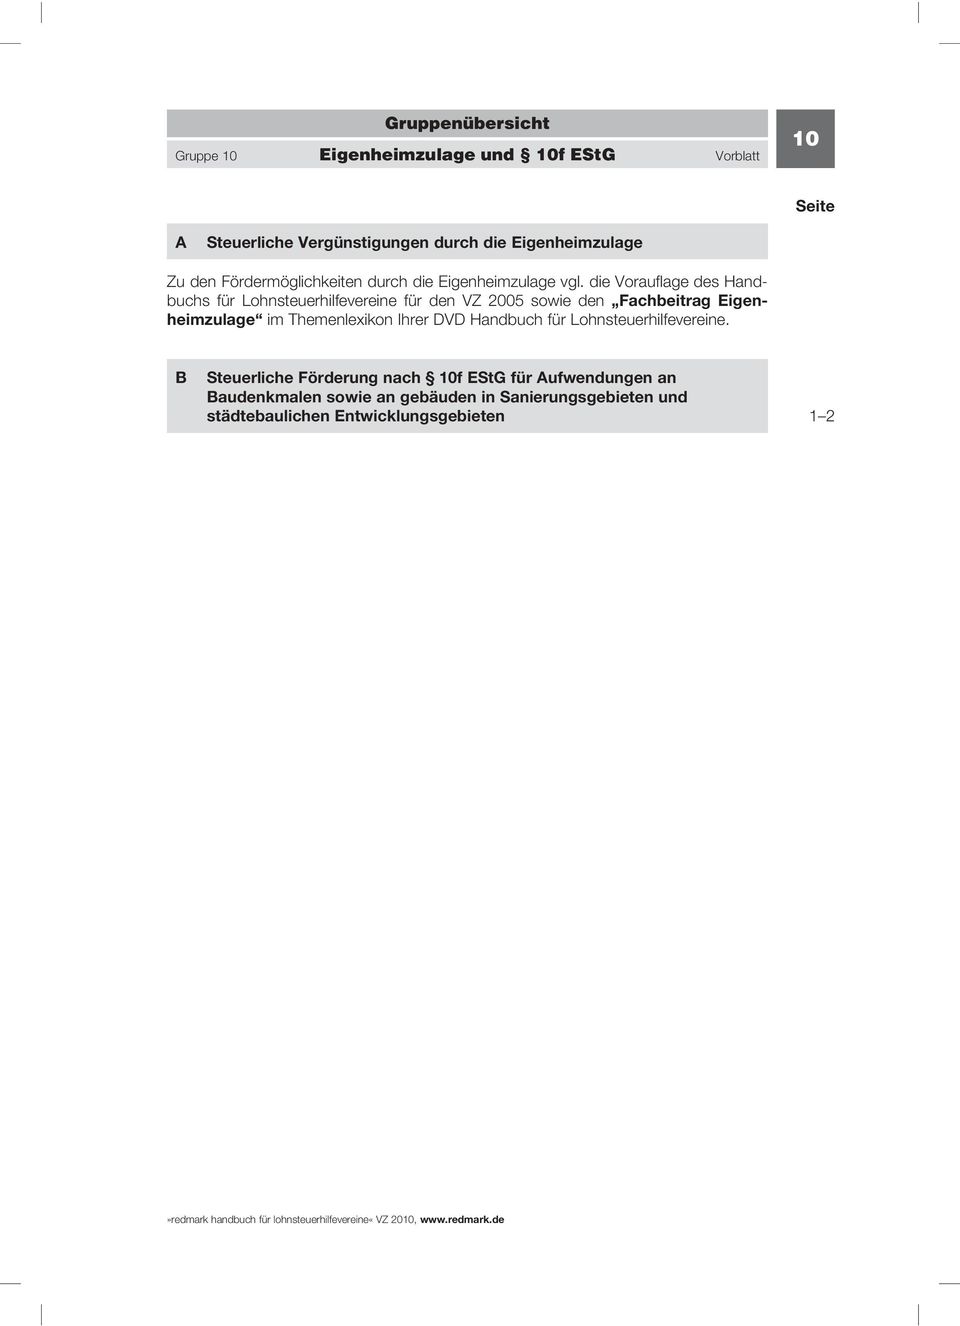 die Vorauflage des Handbuchs für Lohnsteuerhilfevereine für den VZ 2005 sowie den Fachbeitrag Eigenheimzulage im